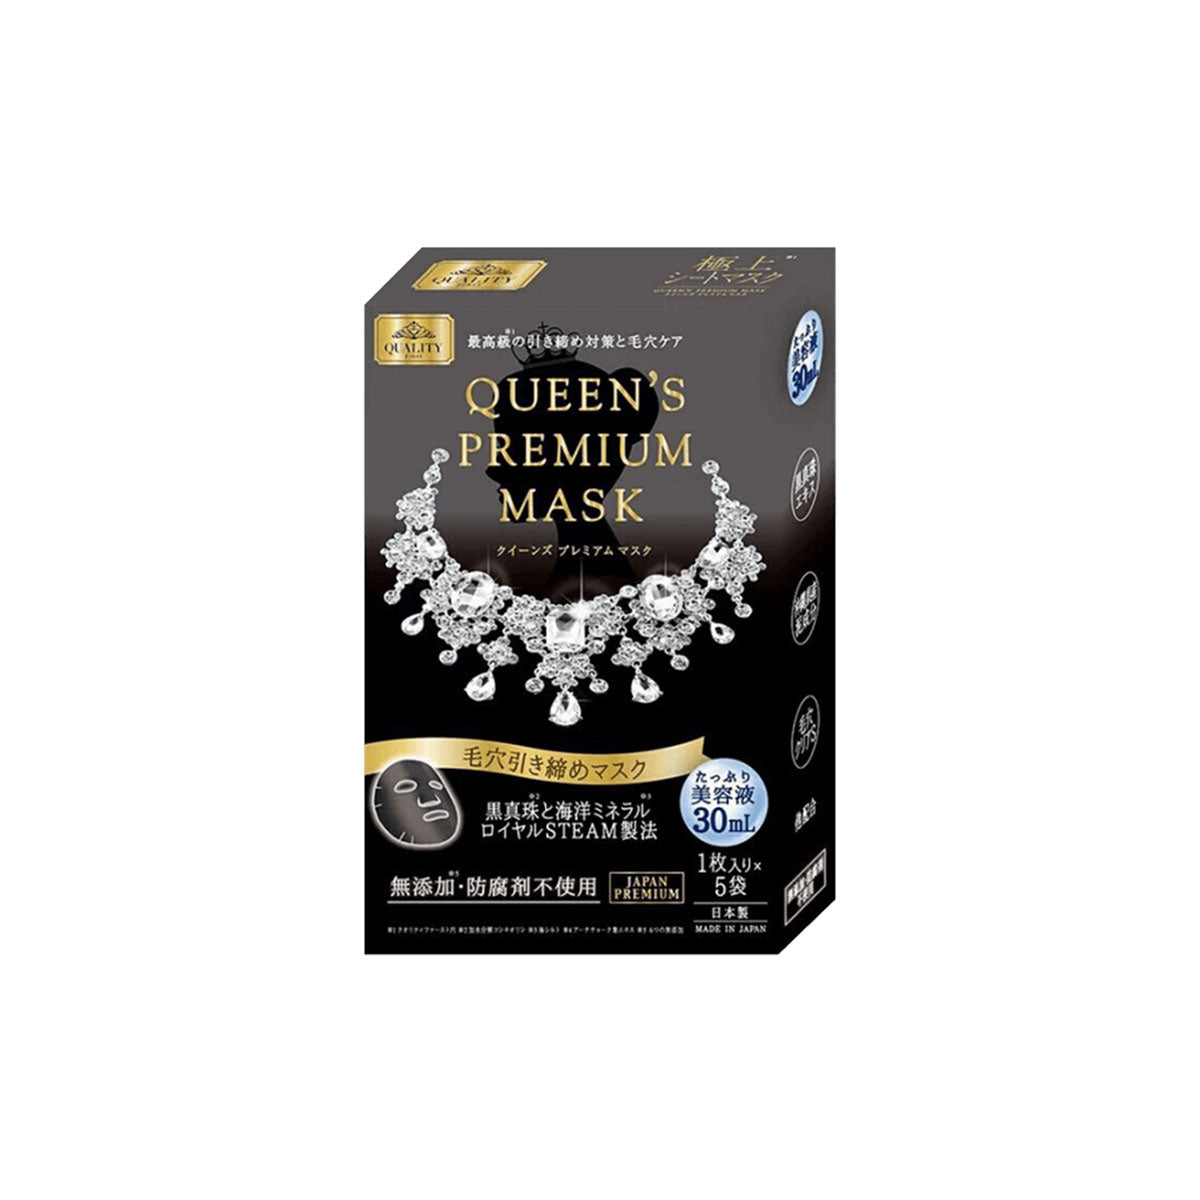 Queen's Premium Mask Pore Tightening 5pcs